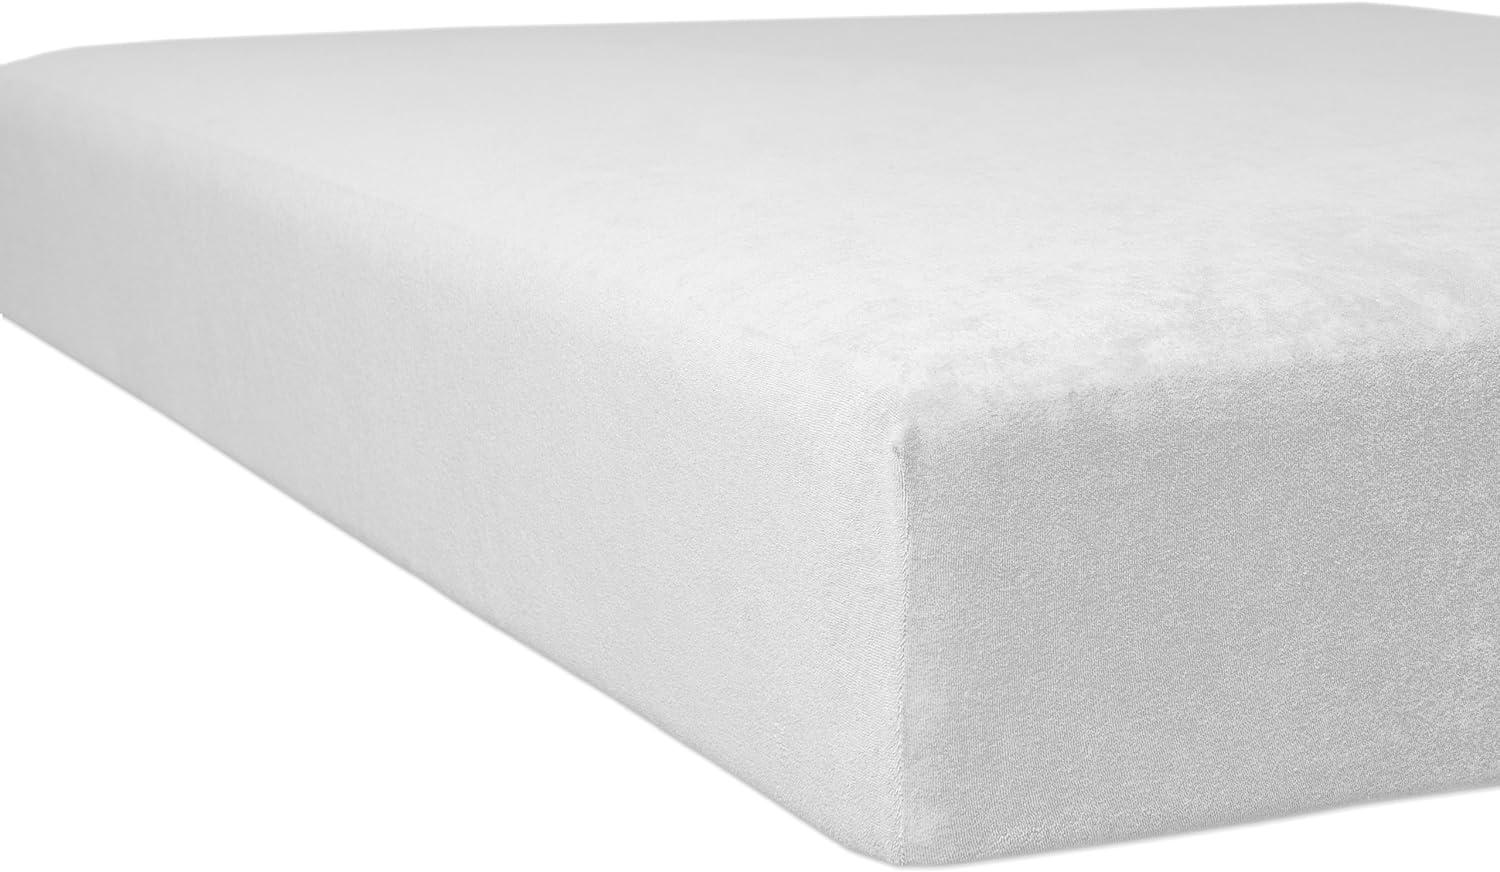 Kneer Flausch-Frottee Spannbetttuch für Matratzen bis 22 cm Höhe Qualität 10 Farbe weiß 180 cm x 200 cm Bild 1